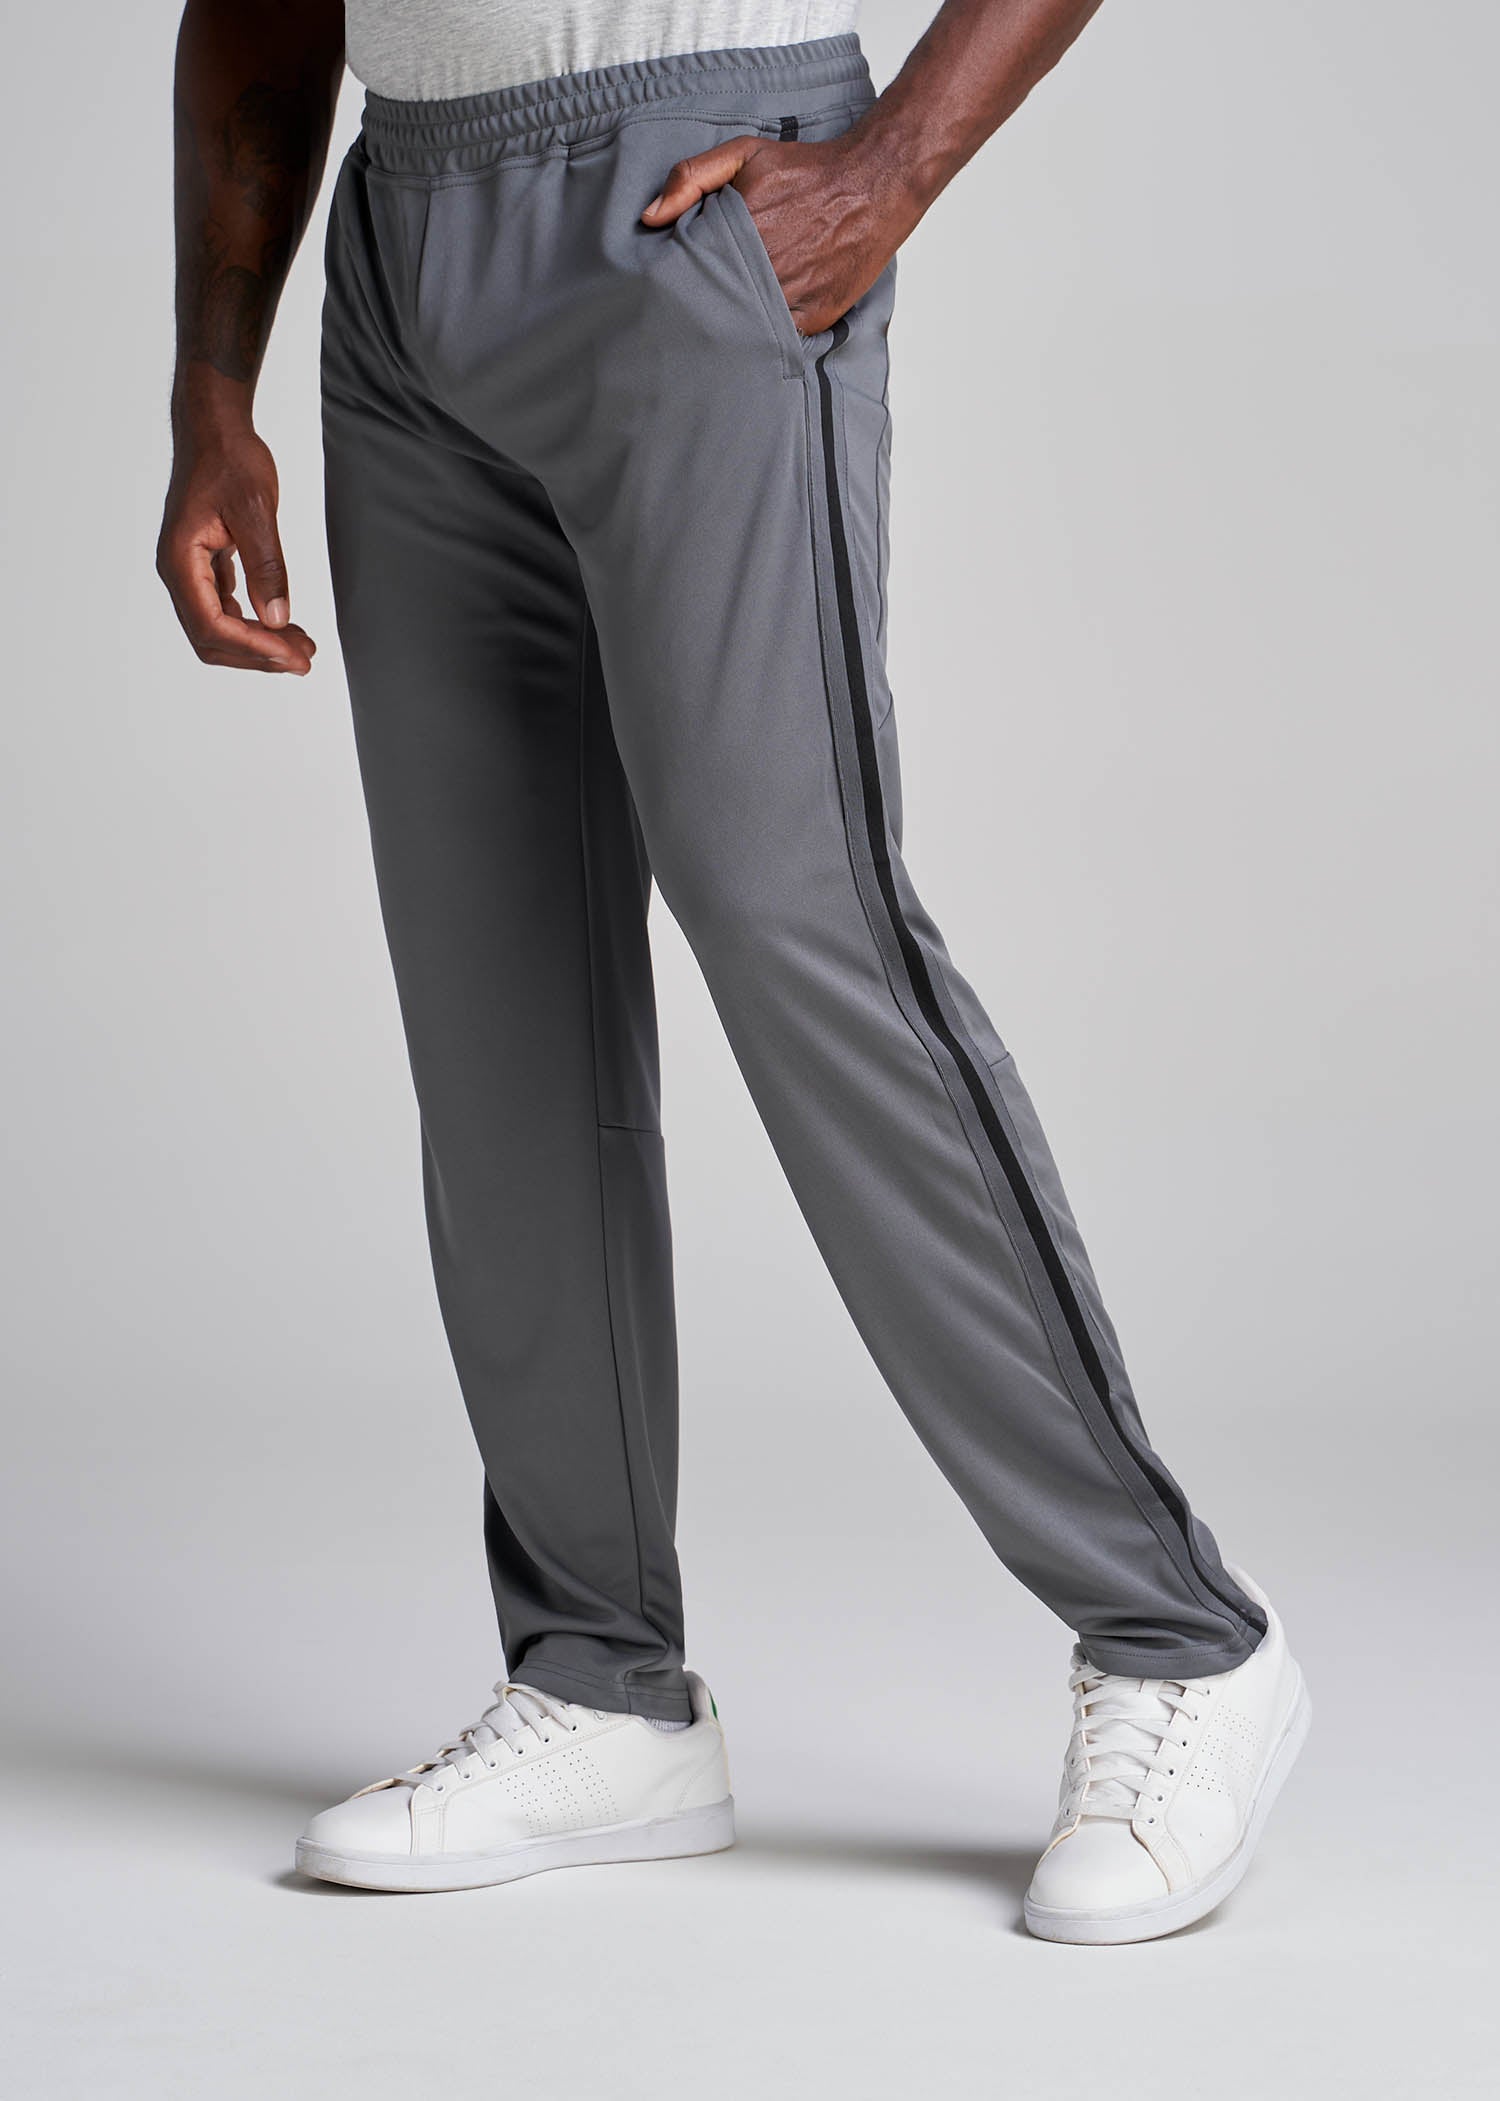 Athletic Stripe Pants for Tall Men in Grey-Black Stripe